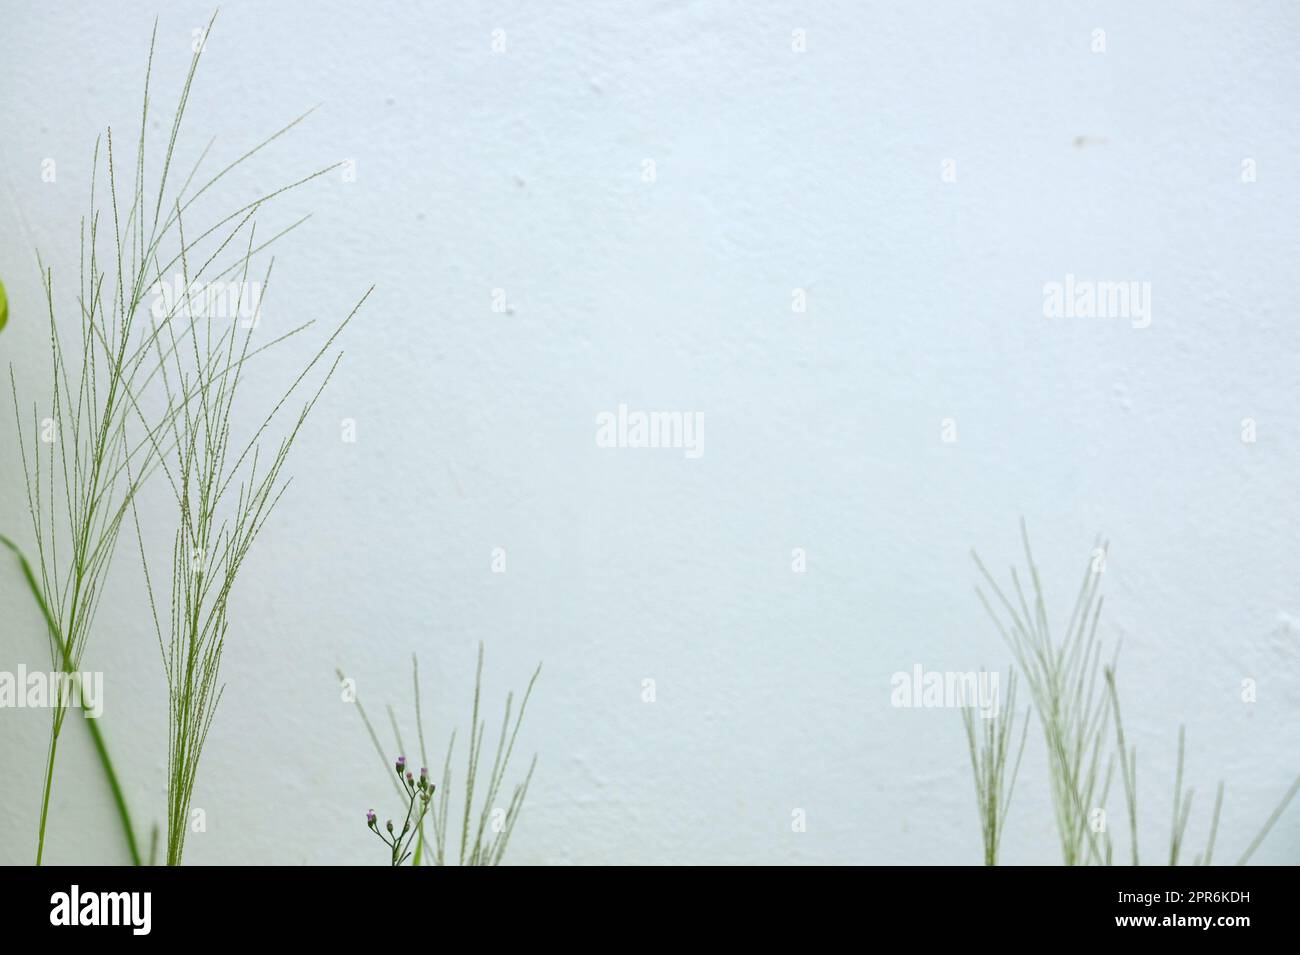 Brousse d'herbe sauvage avec fleur sur mur blanc Banque D'Images